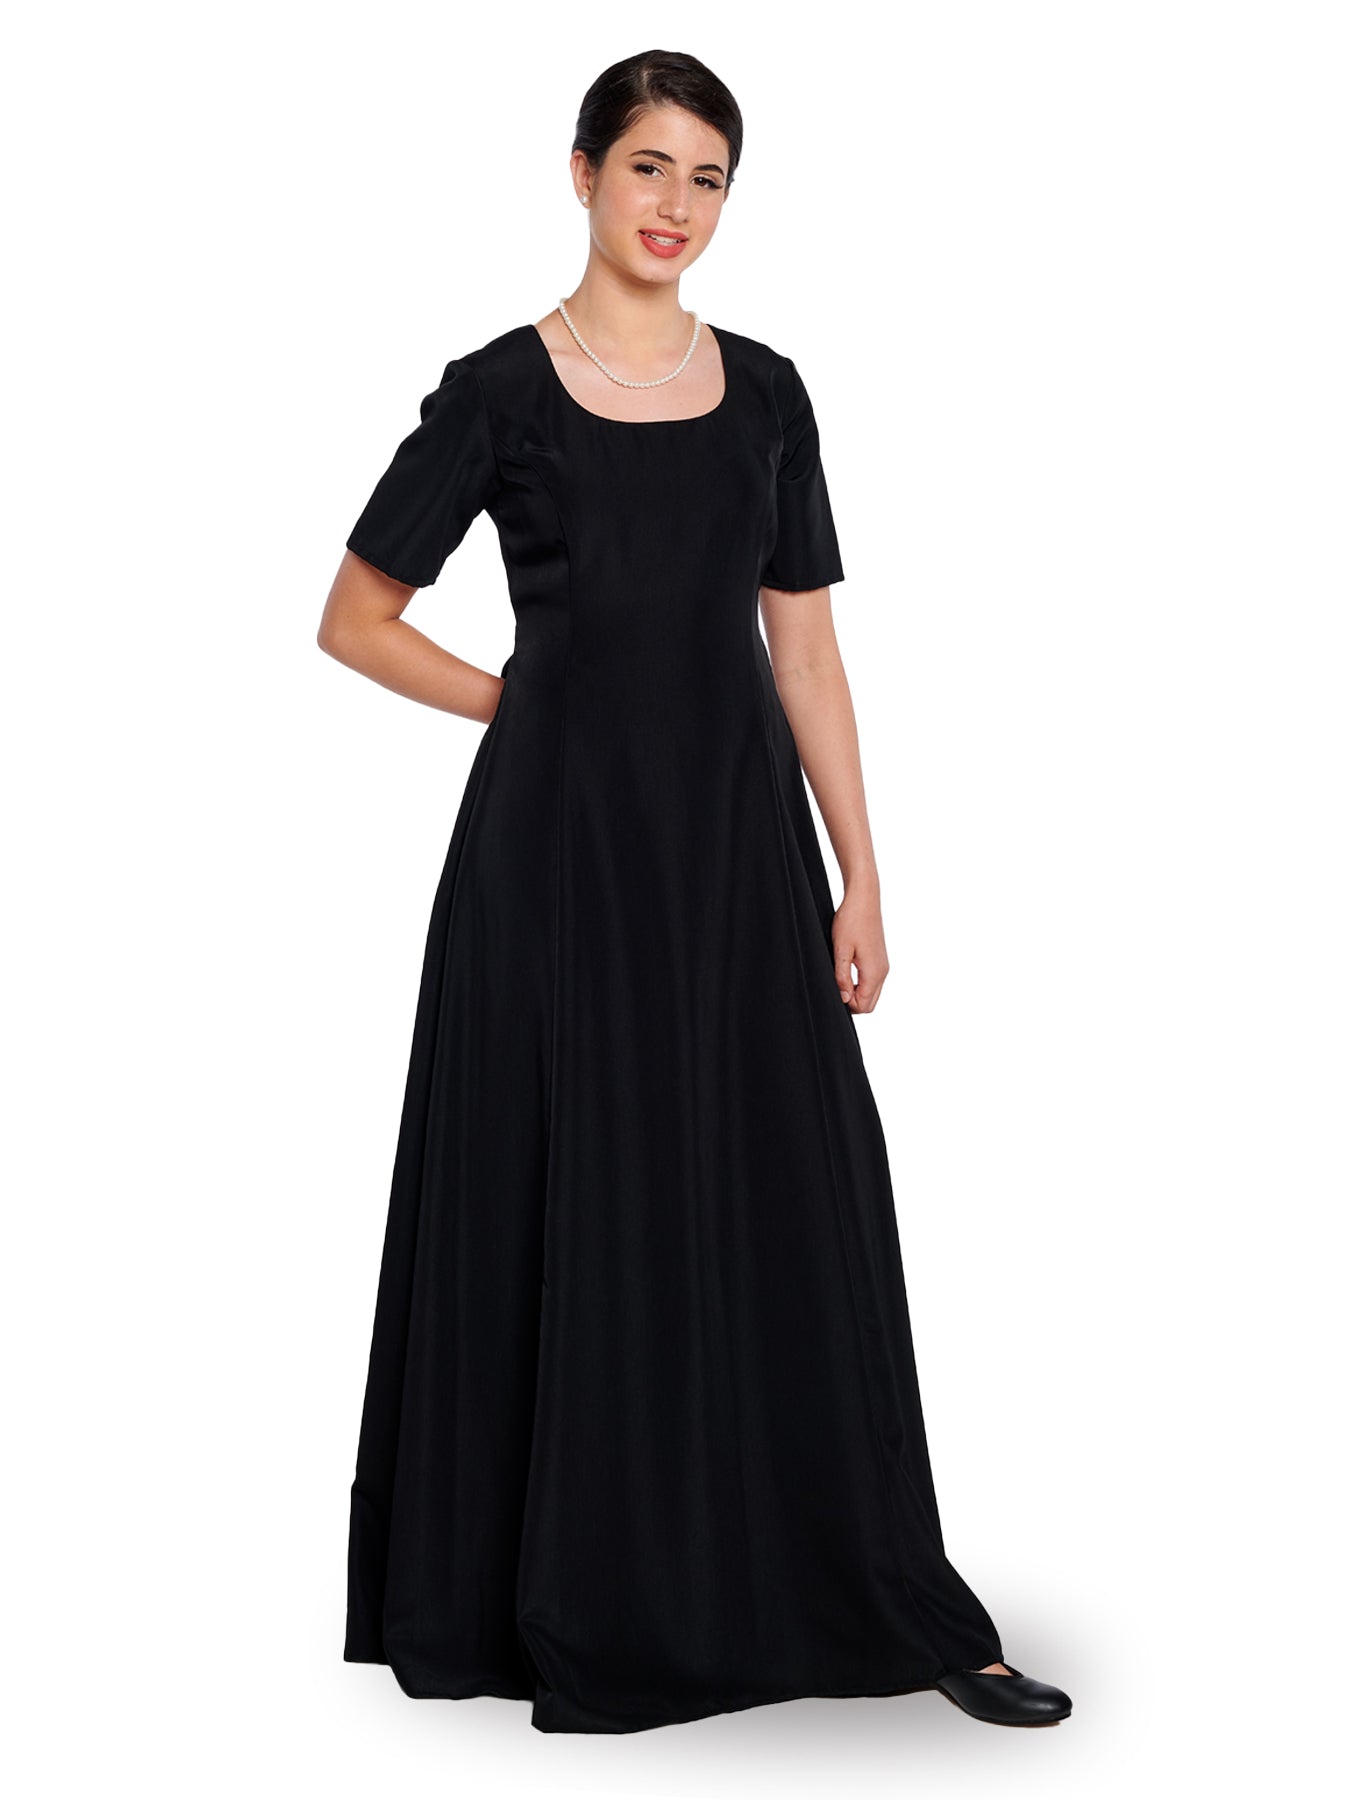 ZELDA (Style #105) - Scoop Neck Short Sleeve Dress